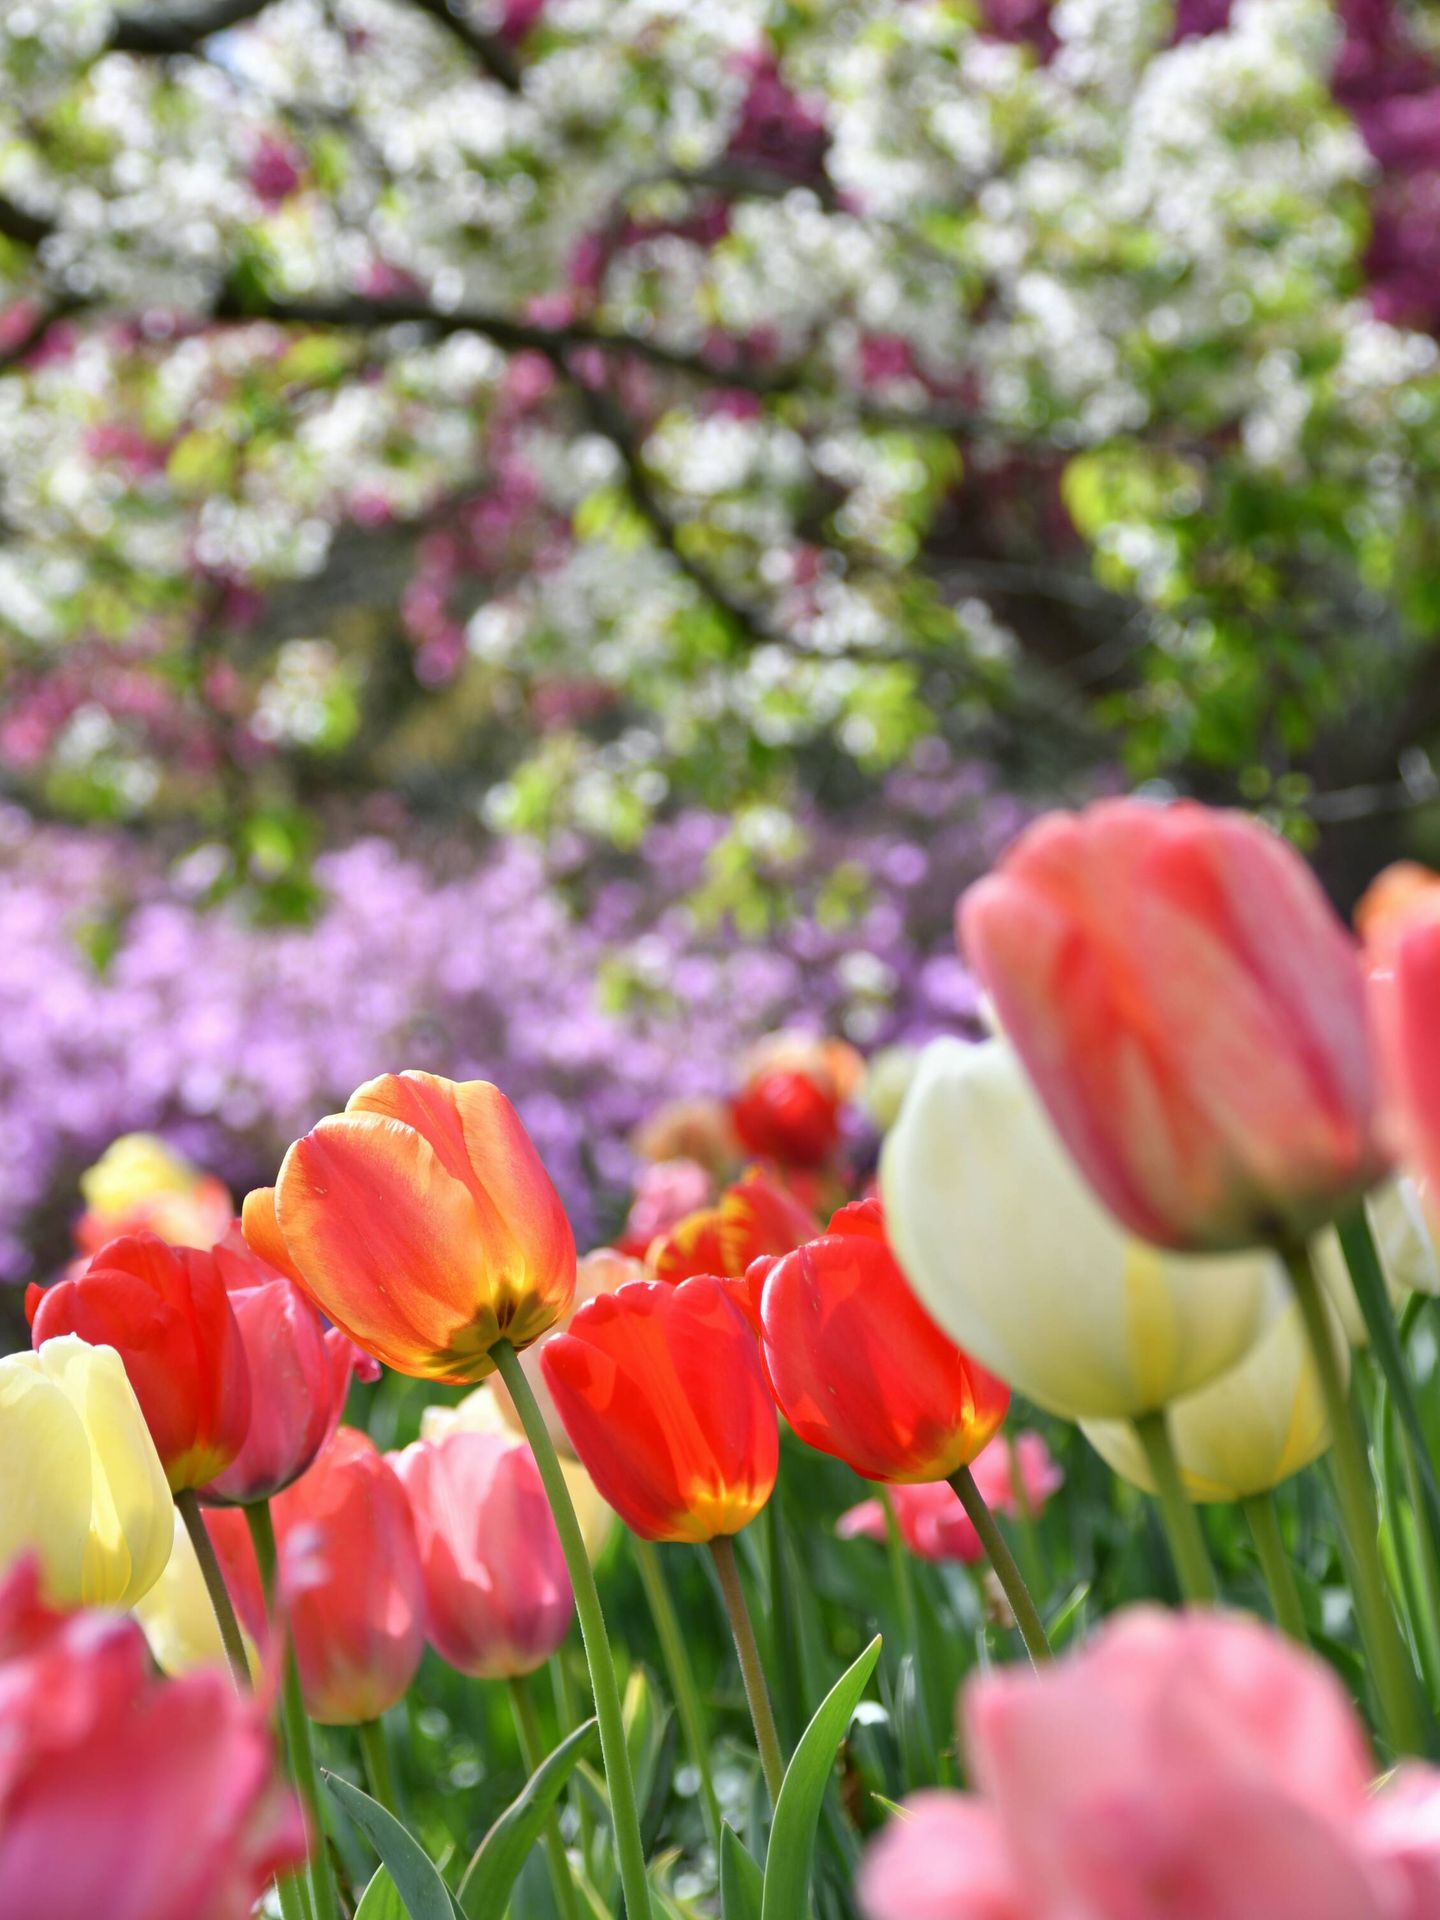 La amapola florece en primavera. (Unsplash/Ali G Rashidi)